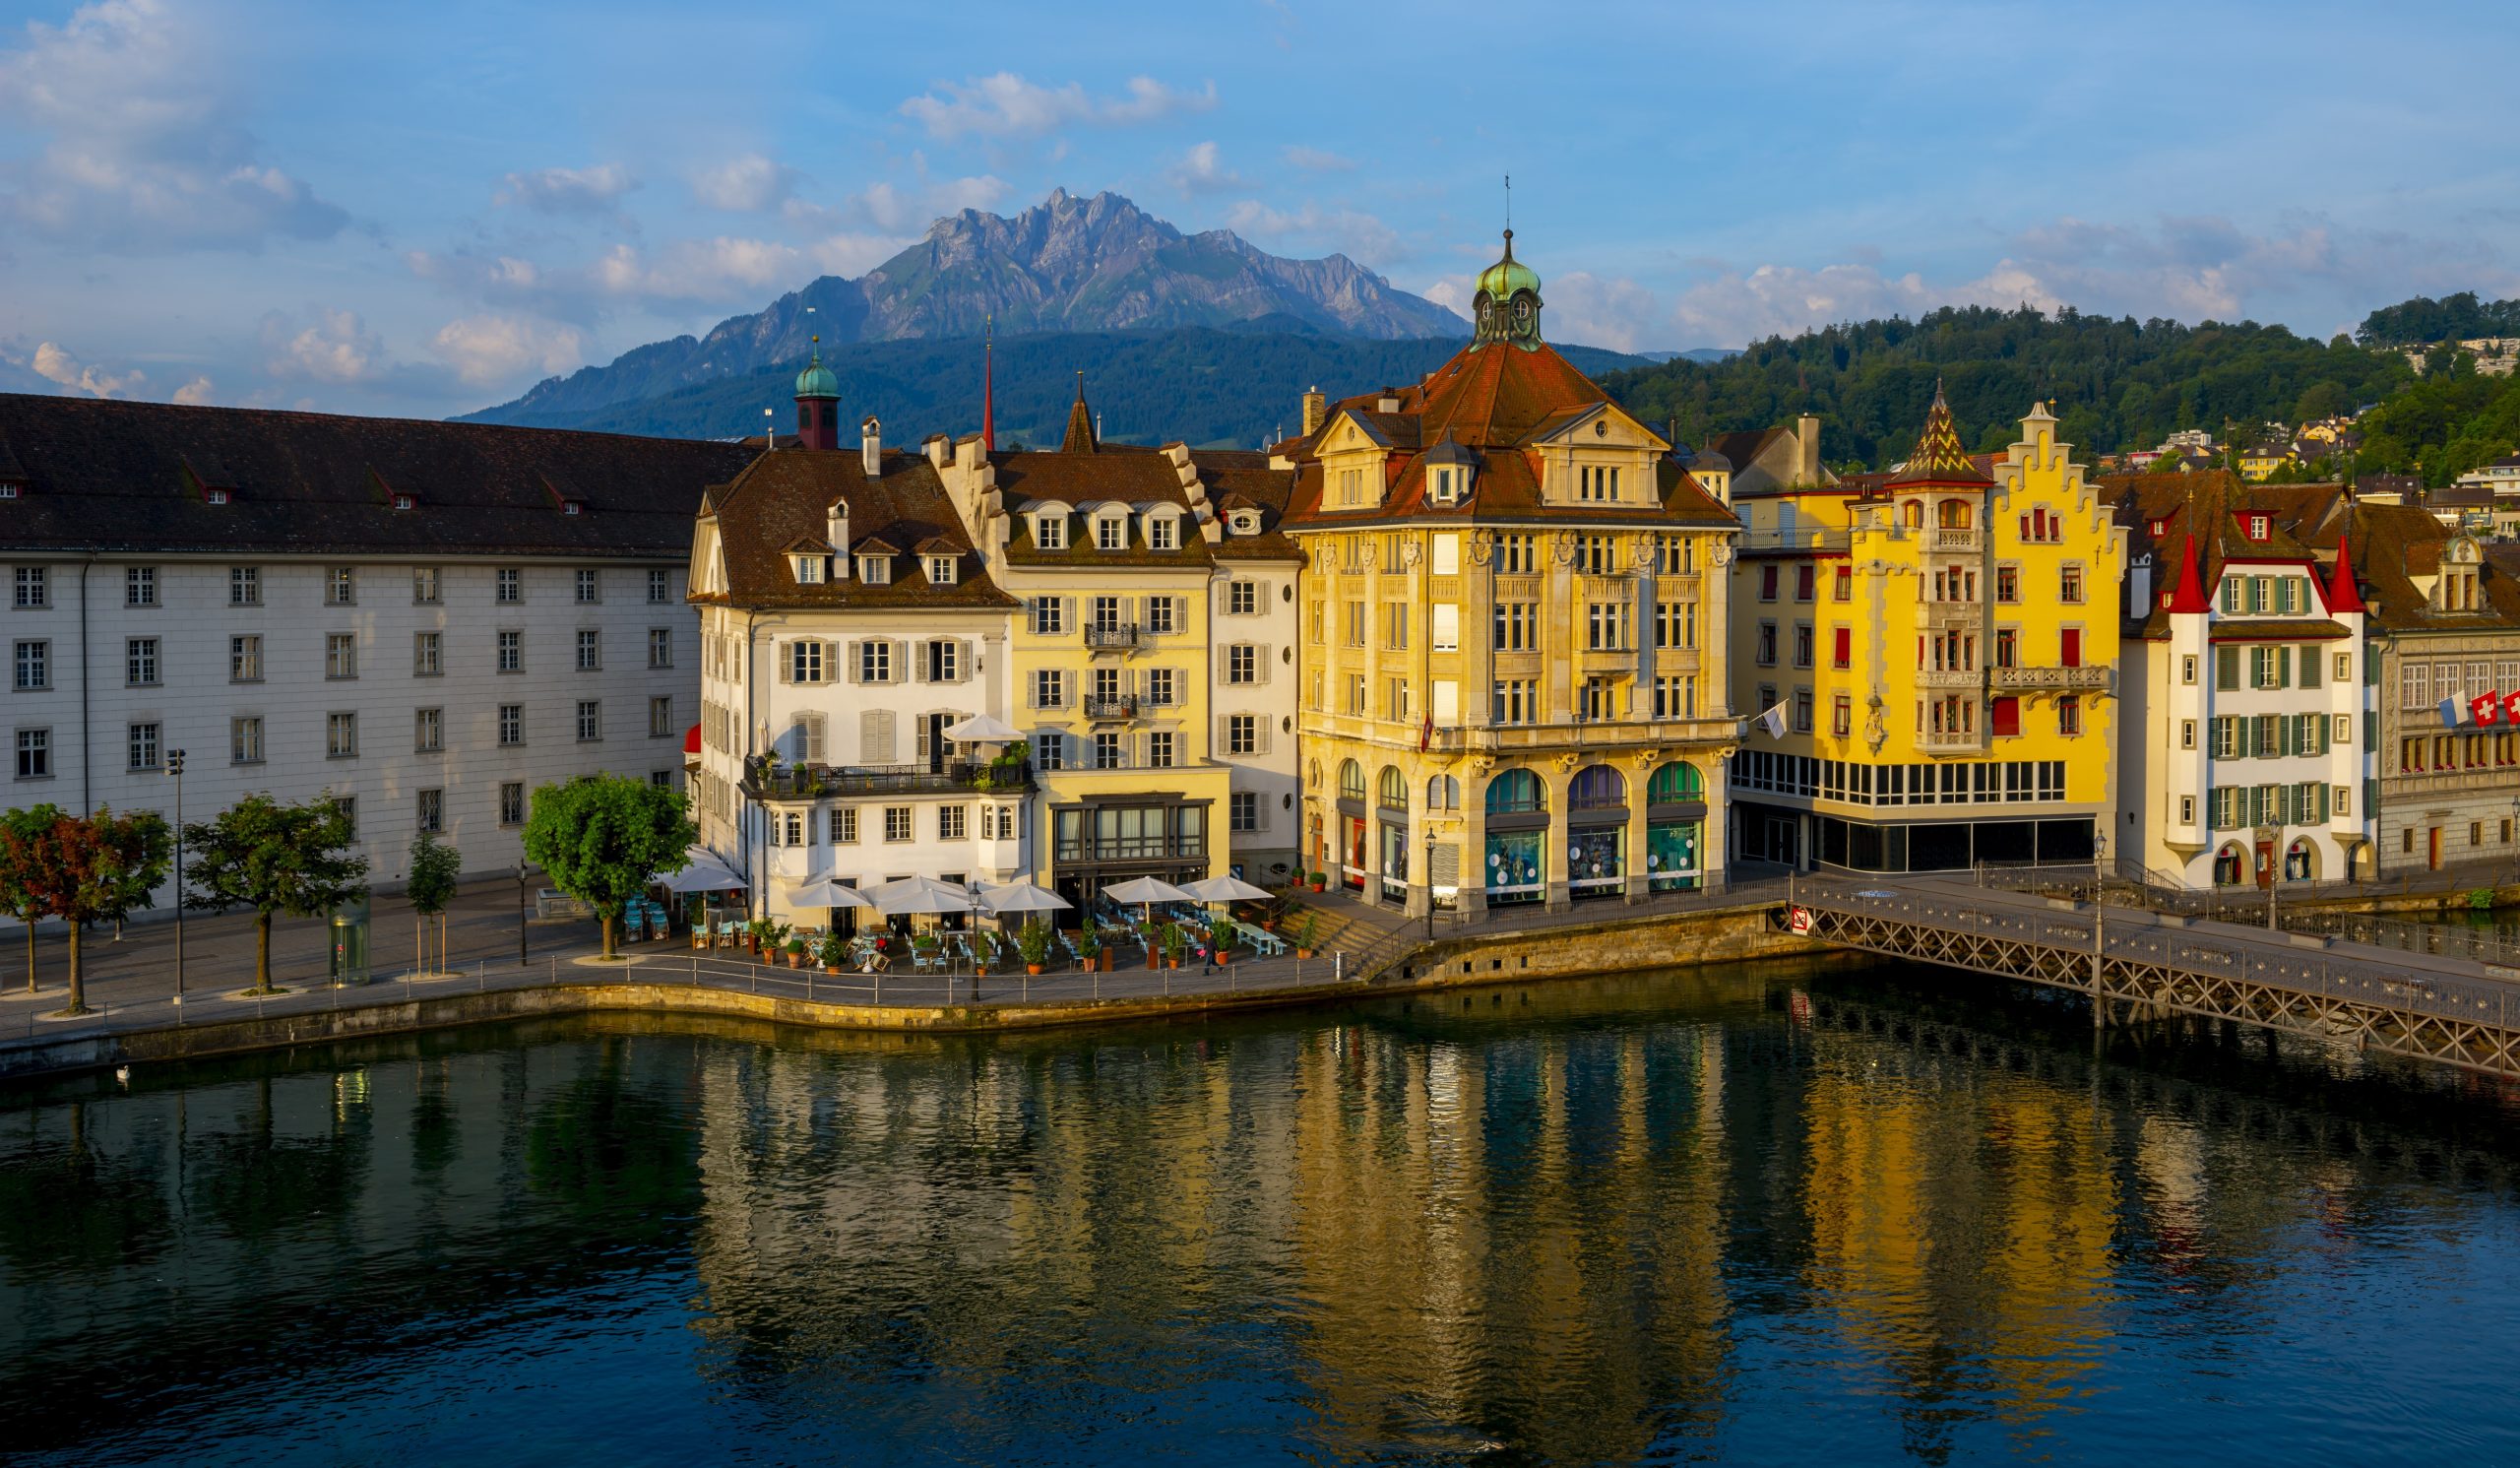 Luzern stimmt für eine Begrenzung der Kurzzeitmiete auf 90 Tage im Jahr